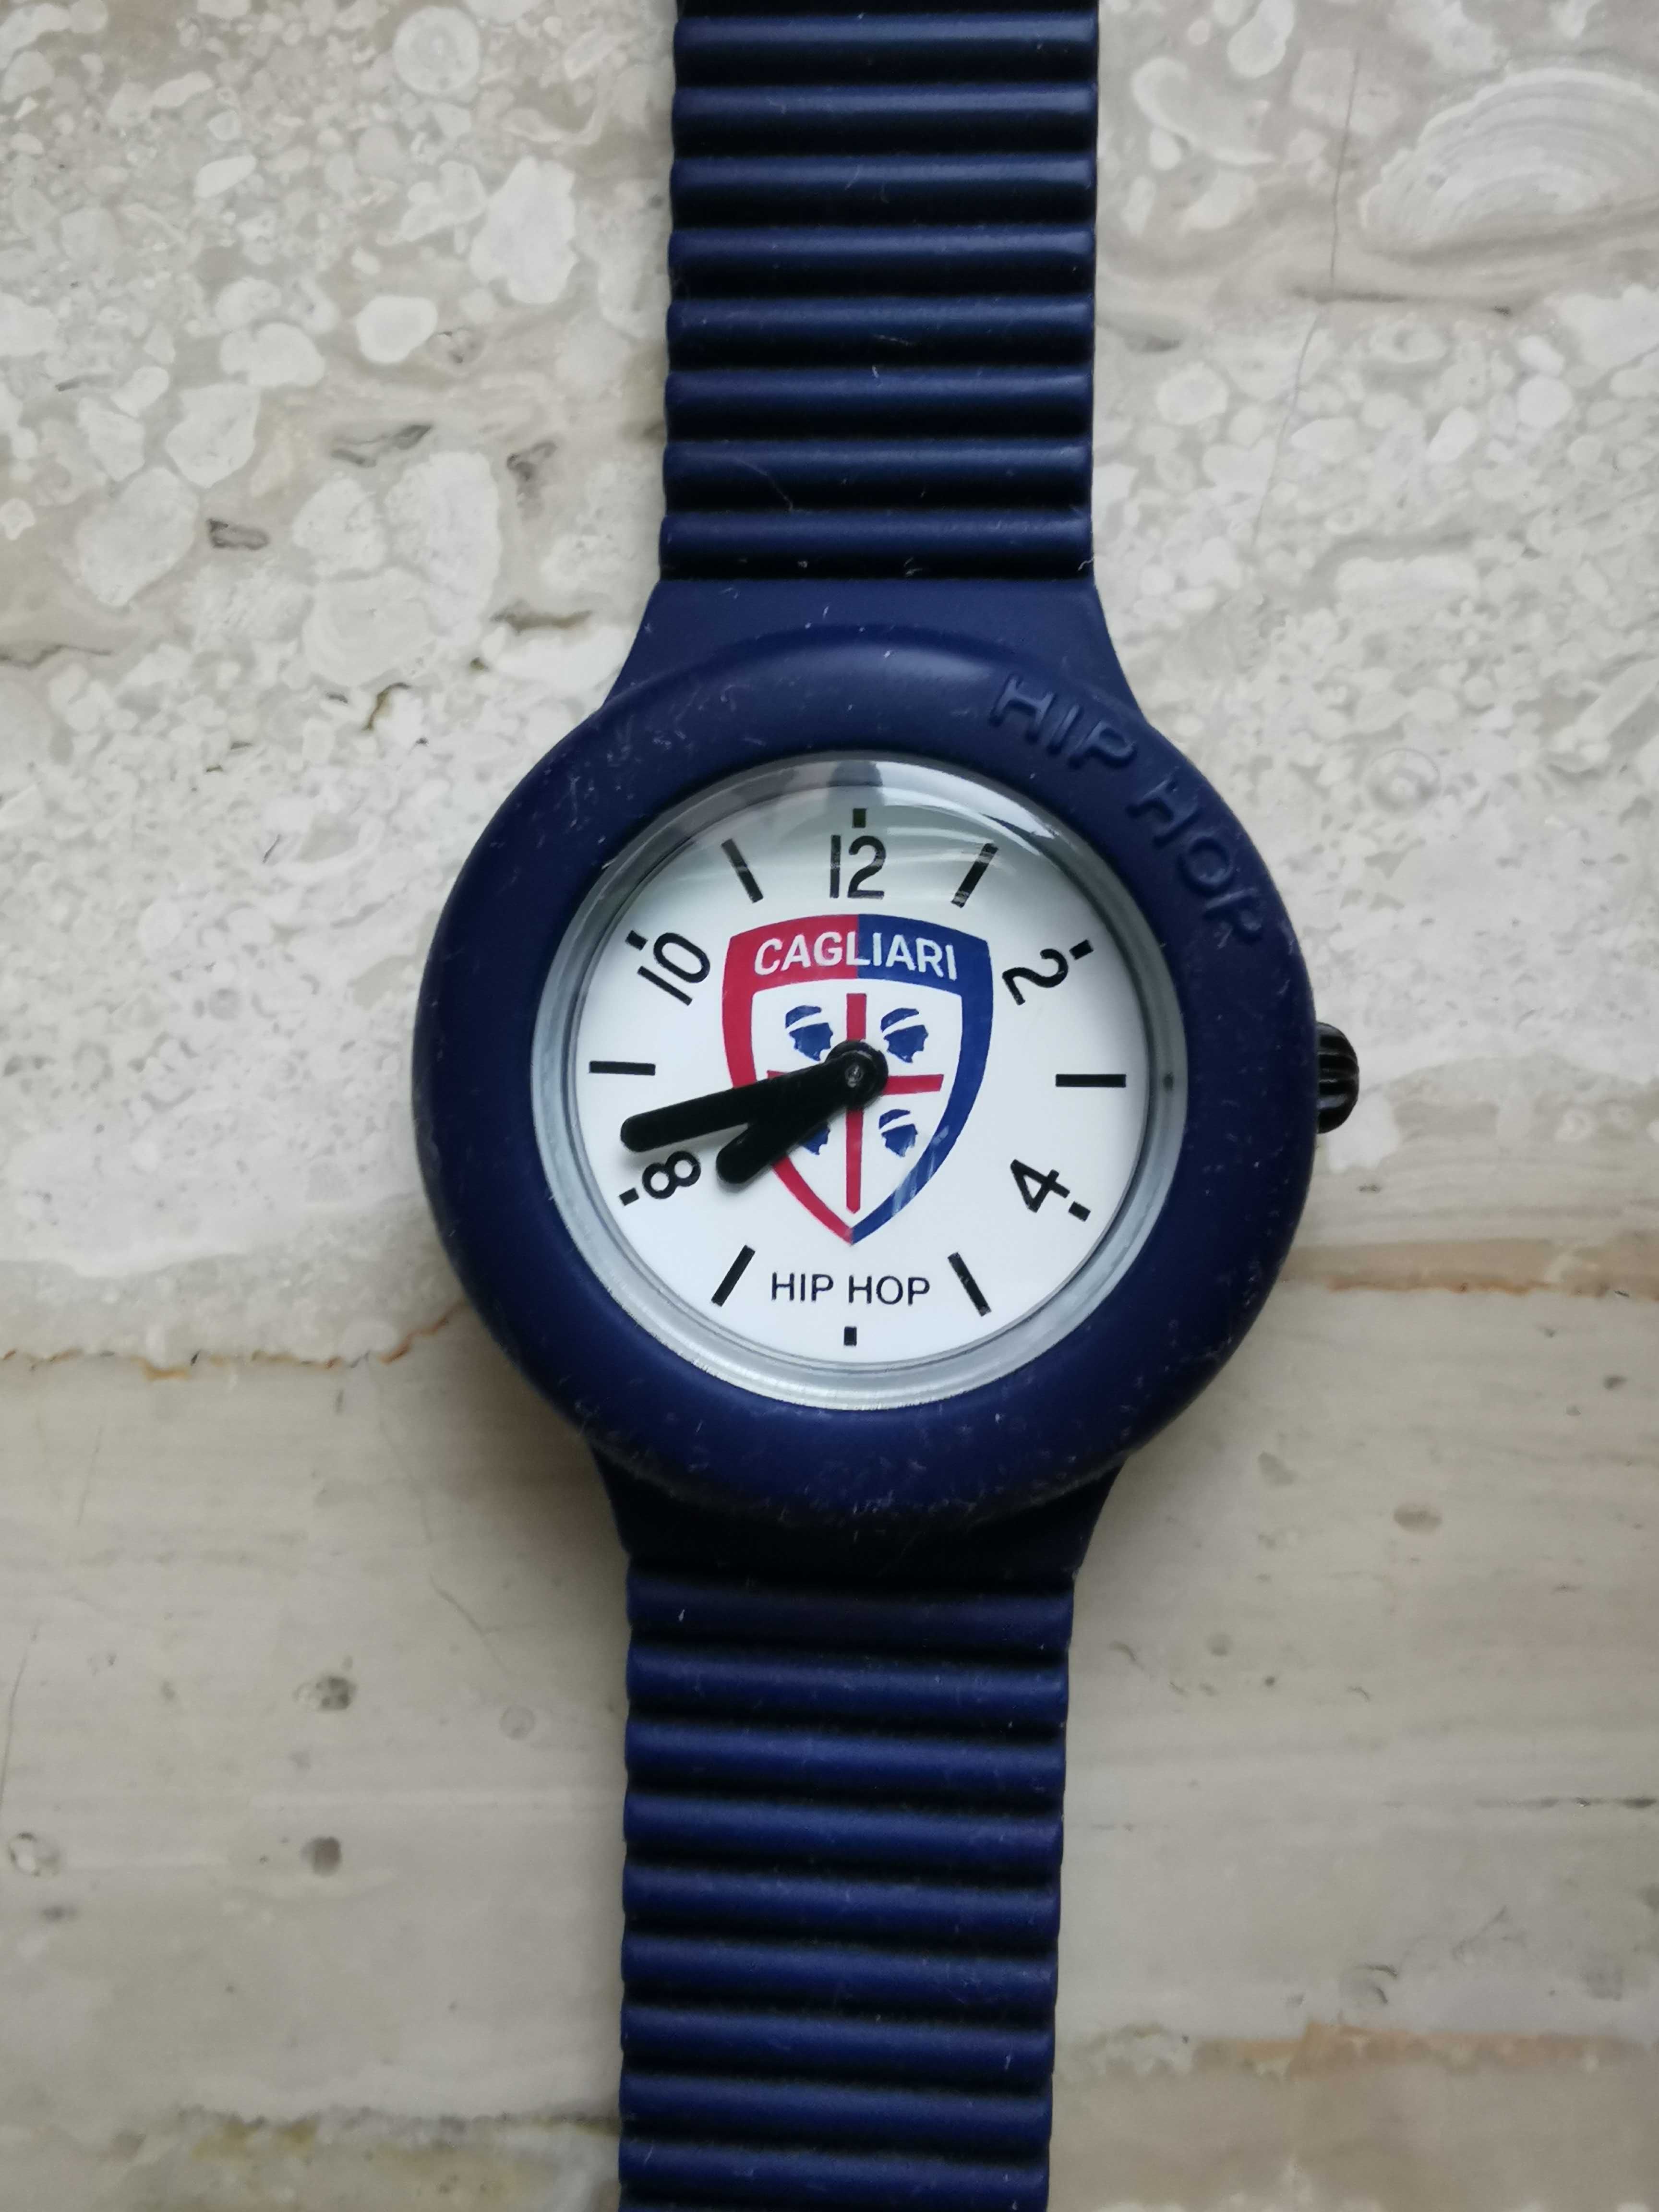 Nowy zegarek dla dziecka klubu piłkarskiego Cagliari Calcio z Sardynii